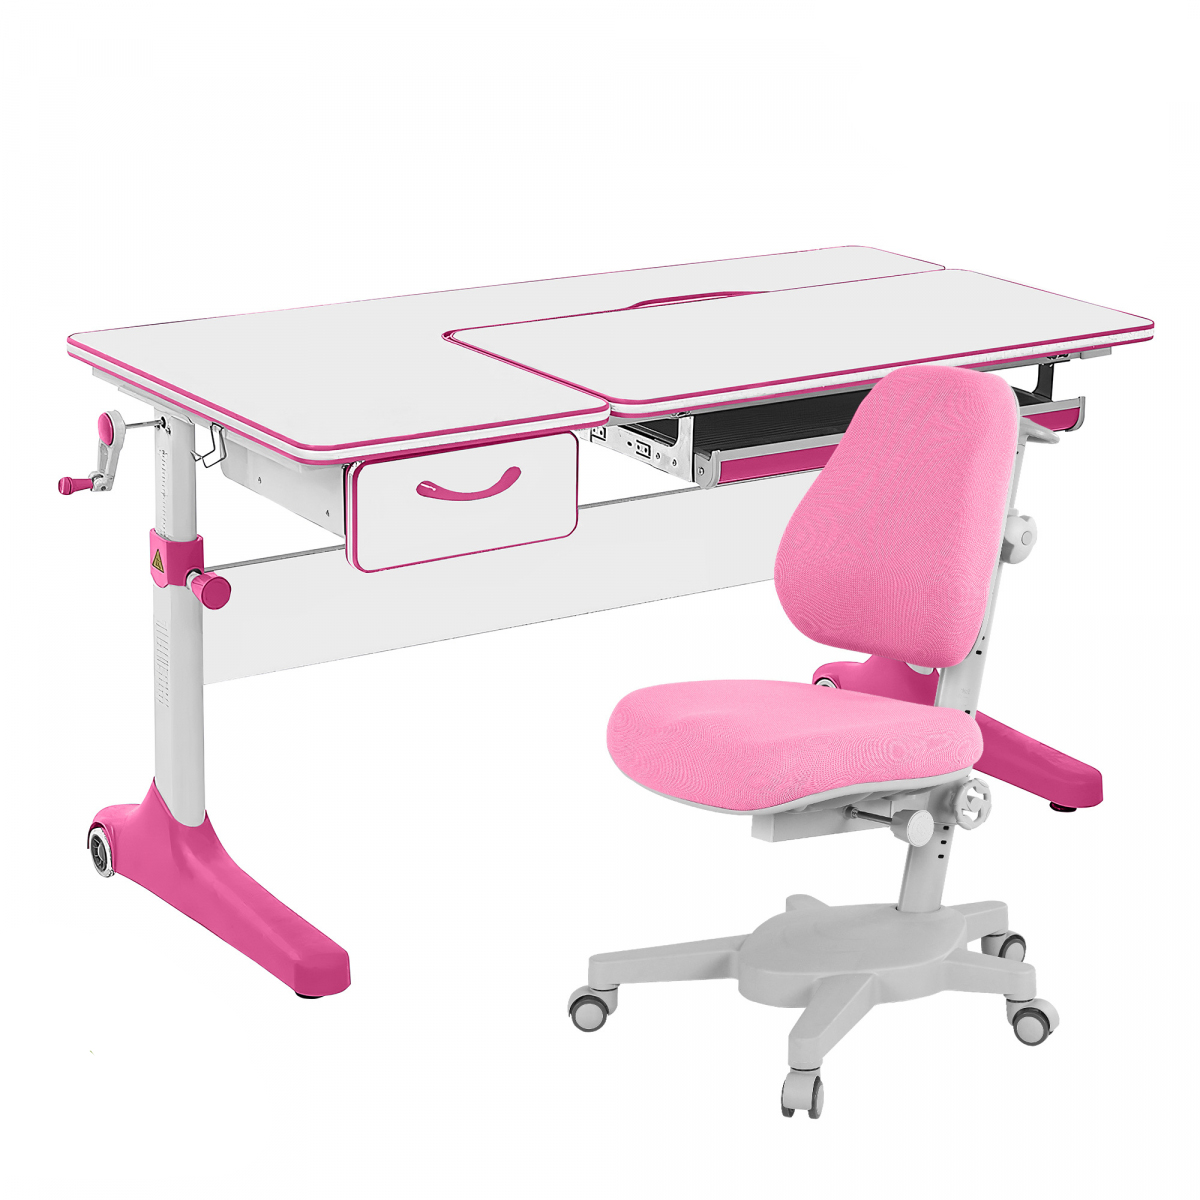 Комплект парта Anatomica Uniqa Lite белый/розовый с розовым креслом Armata парта anatomica uniqa lite клен розовый c розовым креслом figra